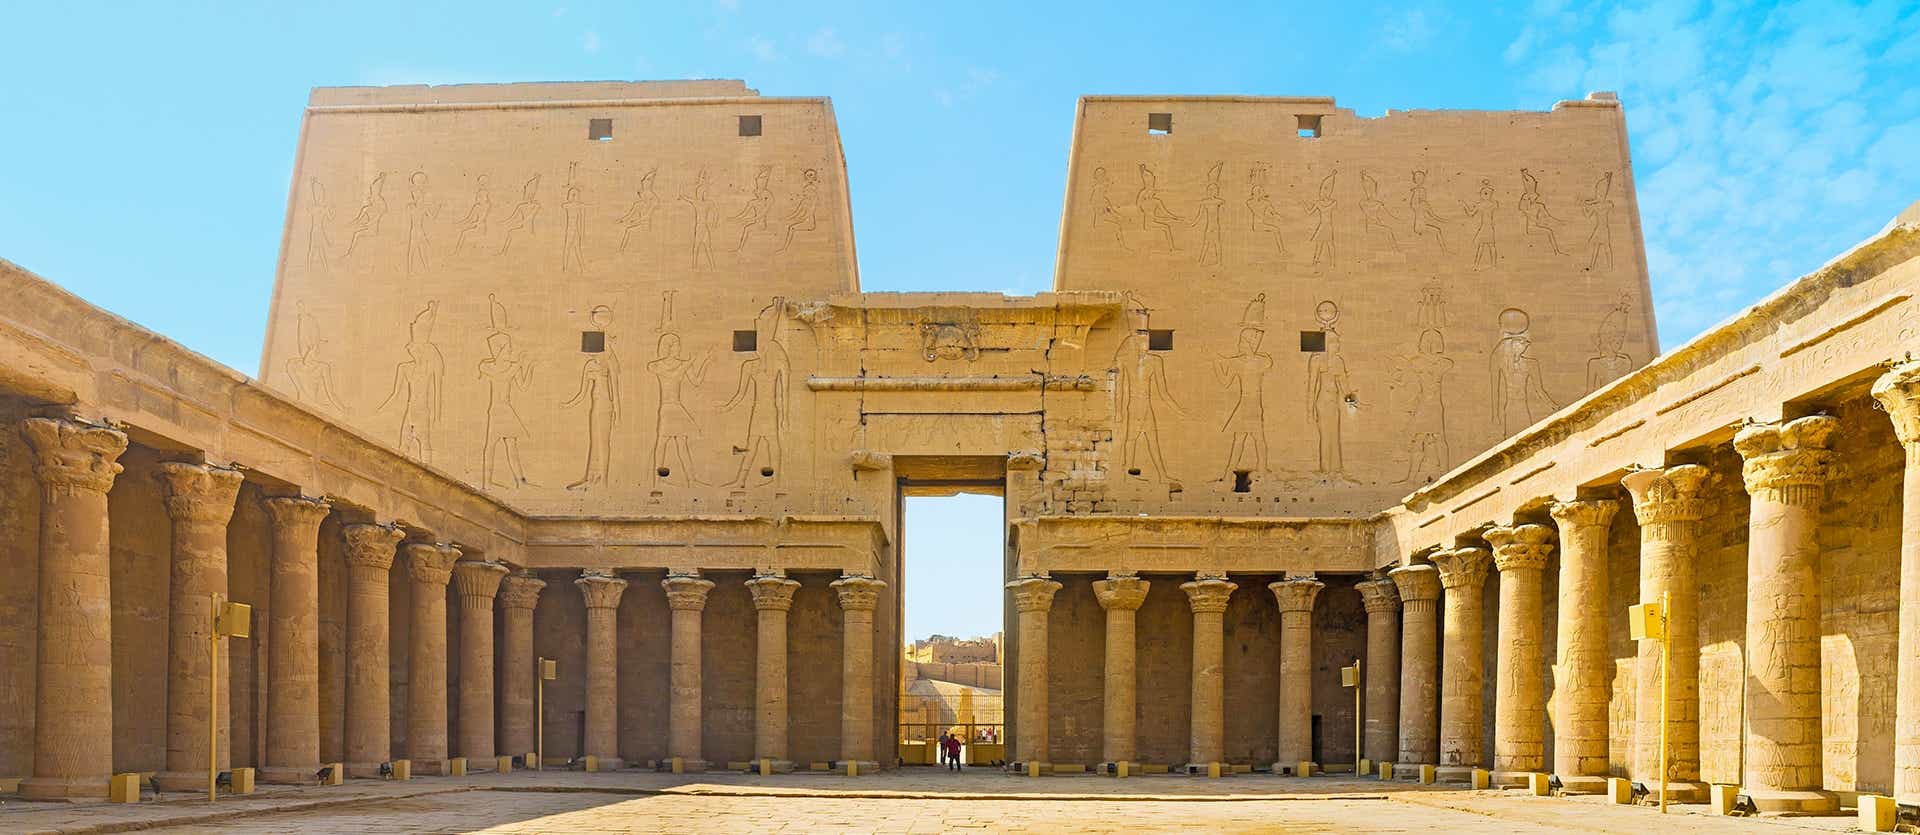 Templo de Horus <span class="iconos separador"></span> Edfu <span class="iconos separador"></span> Egypt